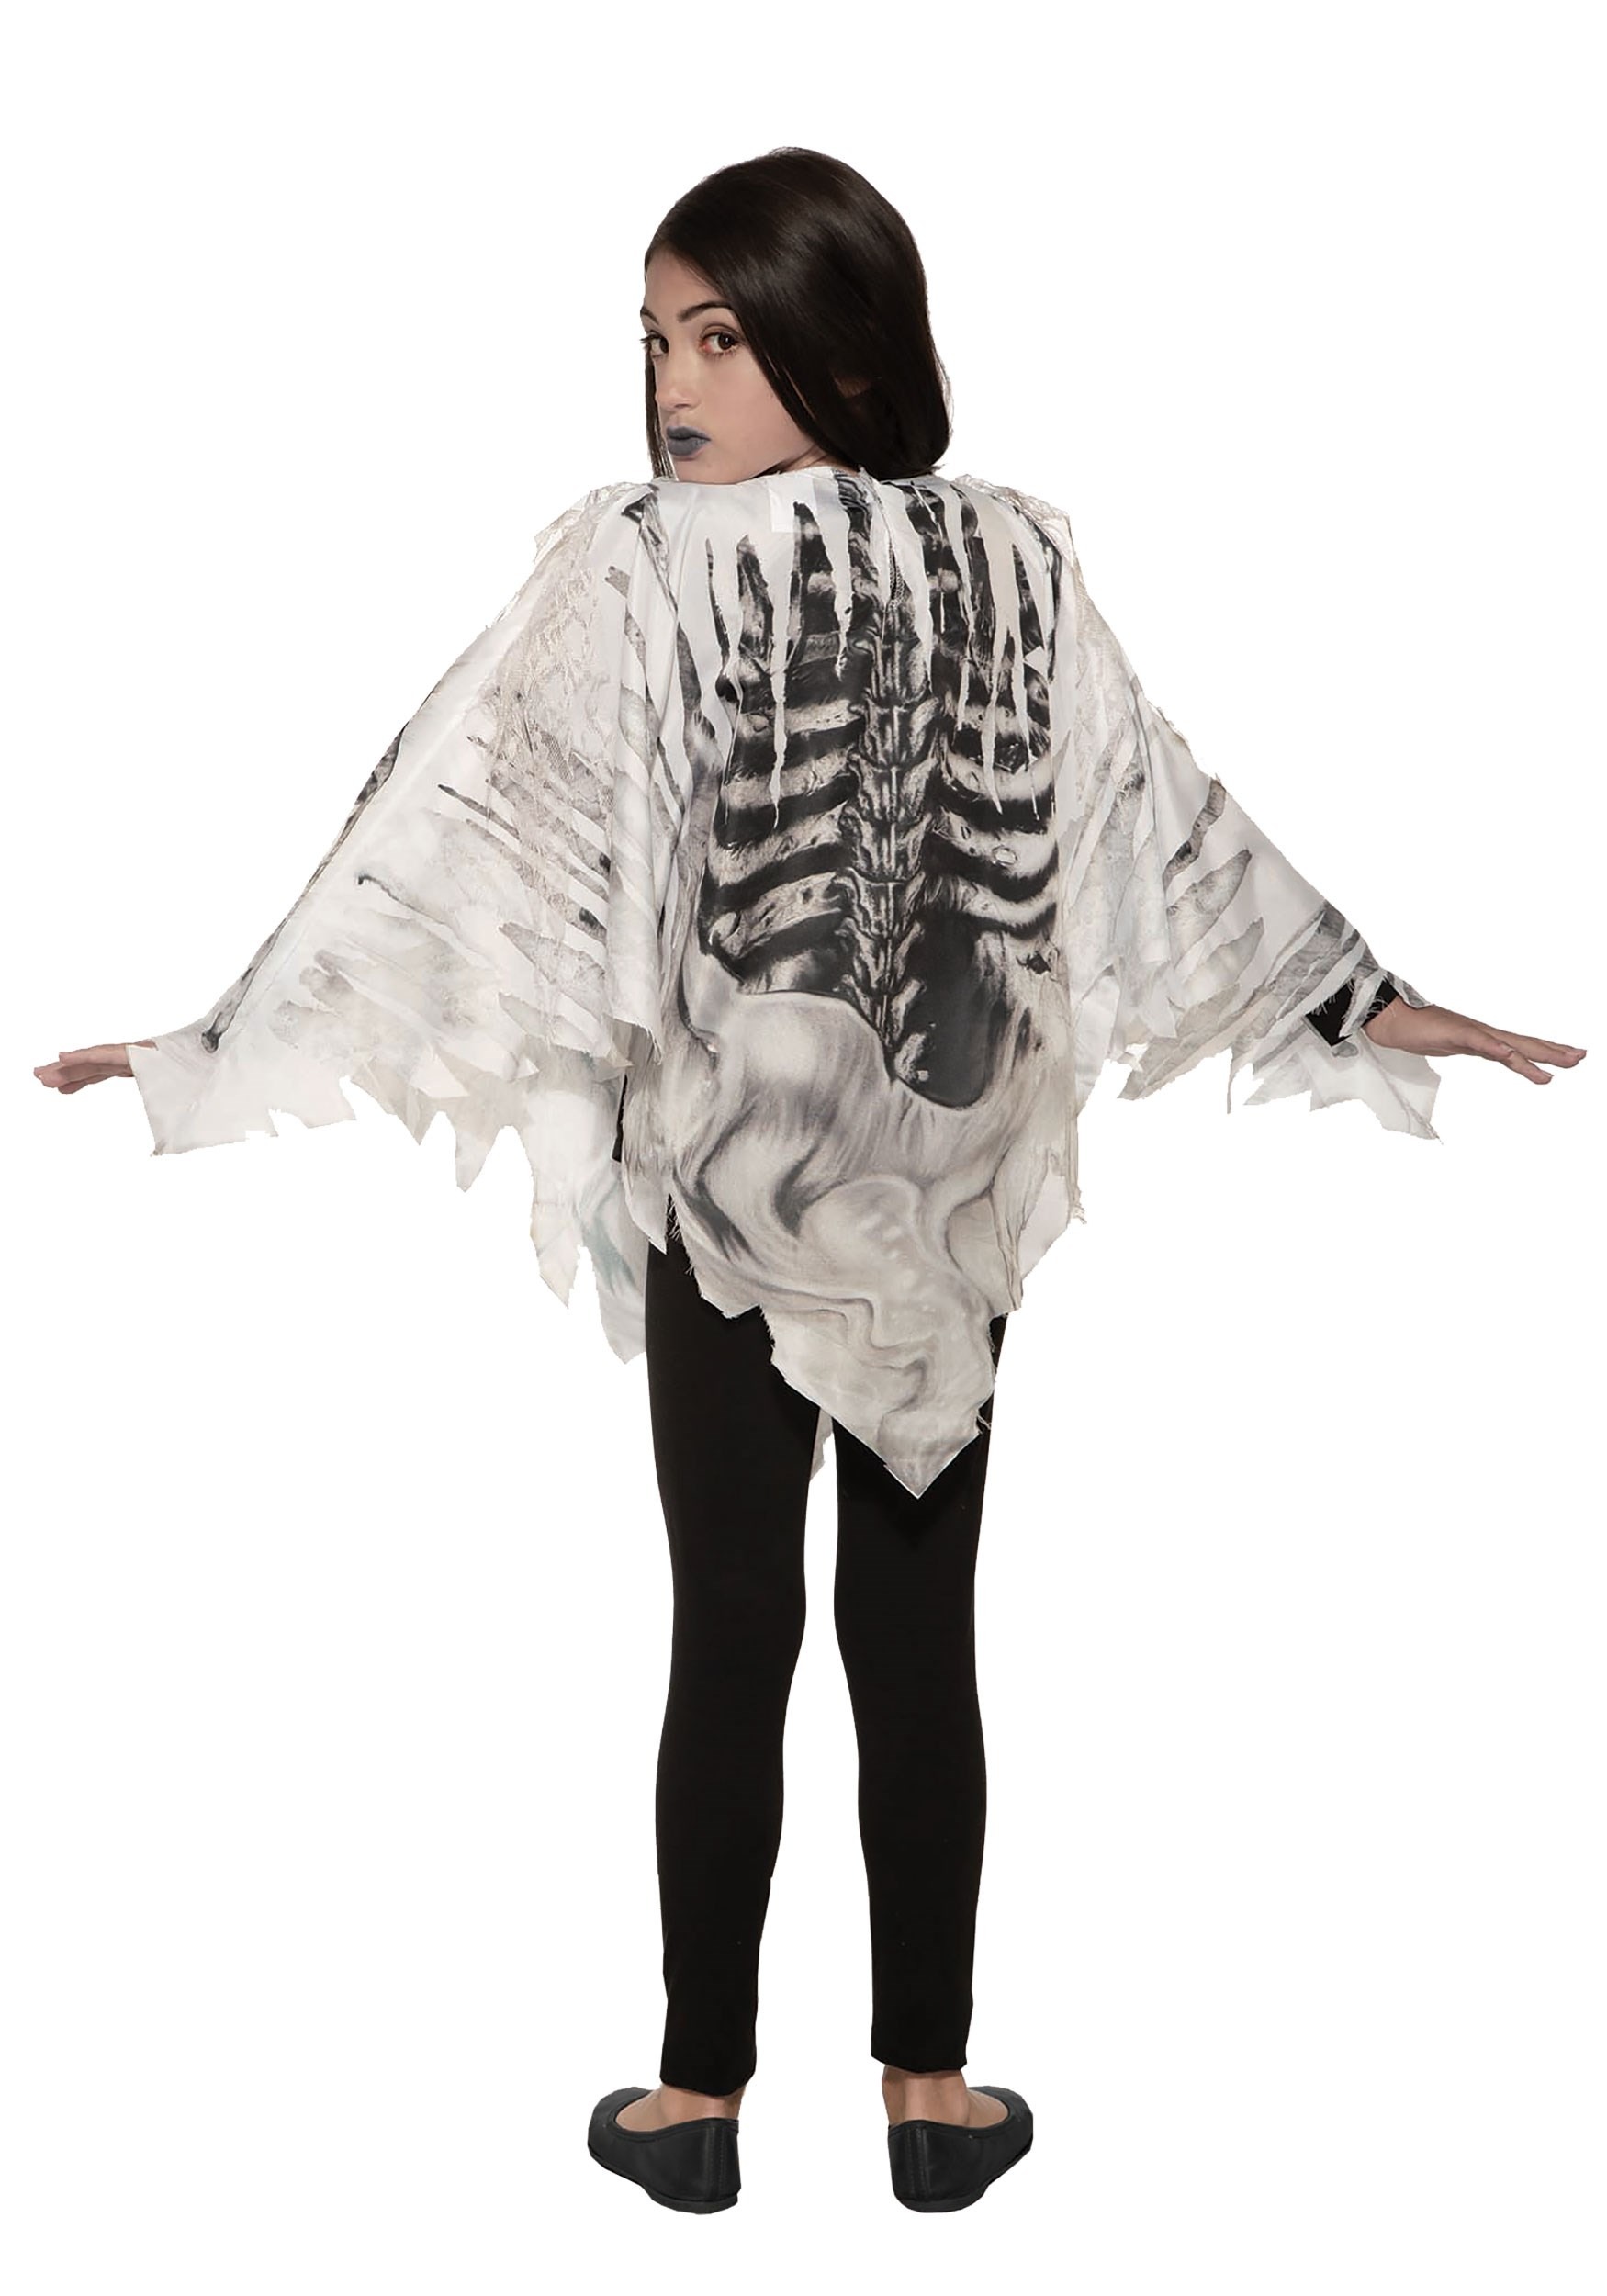 Tattered Skeleton Girl's Poncho Costume